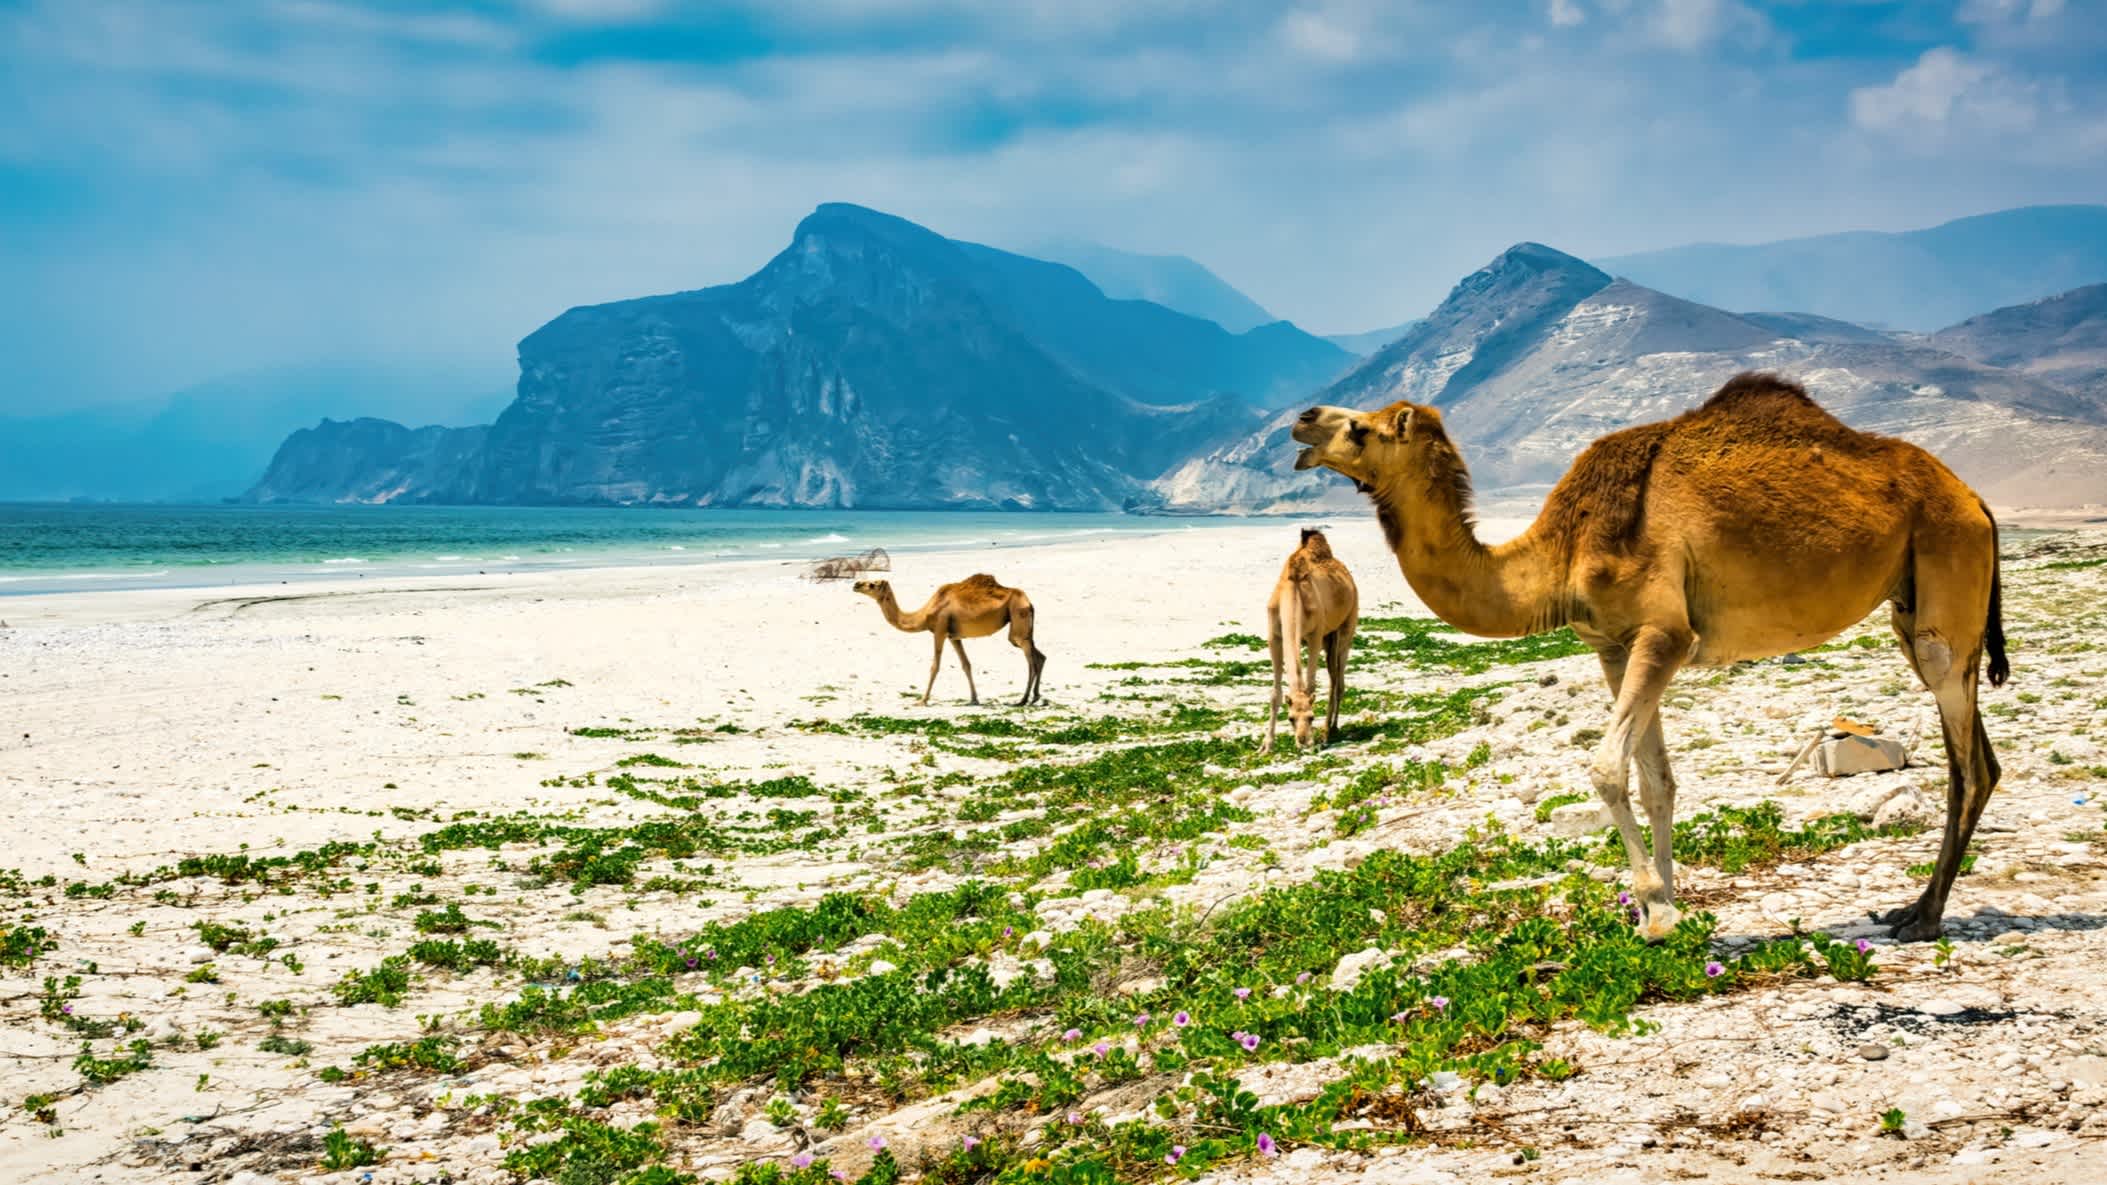 Die Kamele auf dem Strand in Salalah, Oman.

